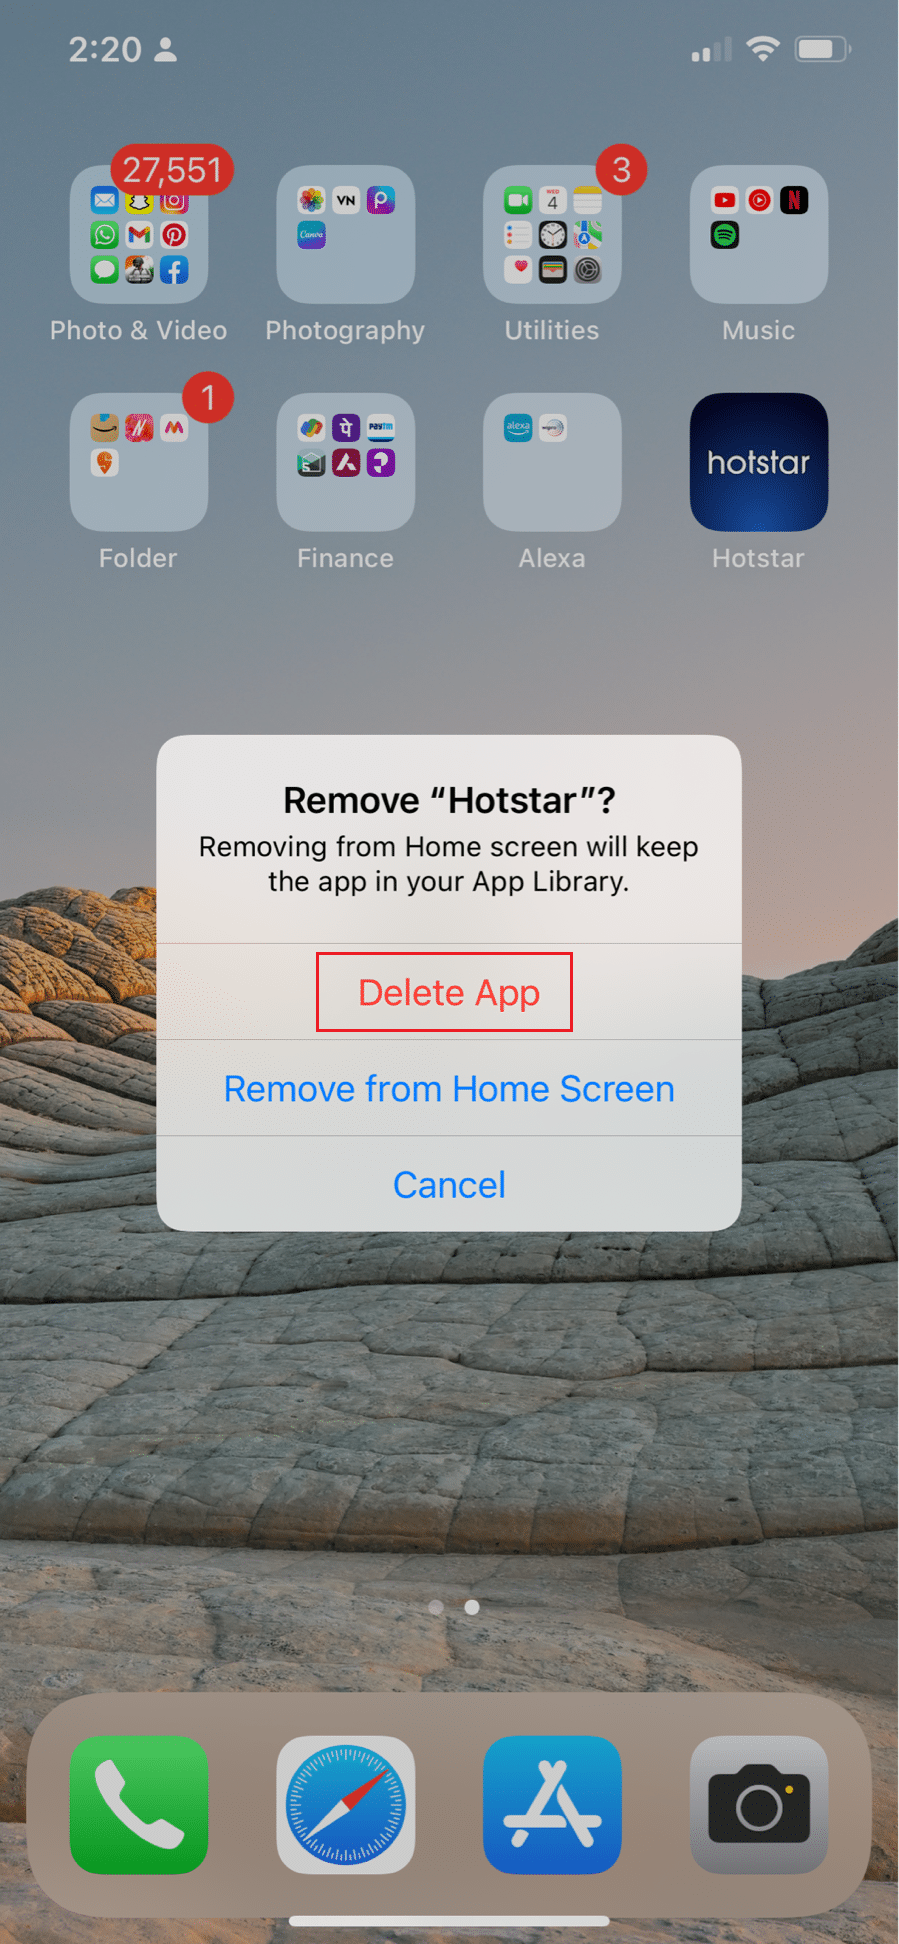 выберите опцию «Удалить приложение», чтобы удалить приложение Hotstar. Исправить ошибку лицензии на защищенный контент Disney Plus